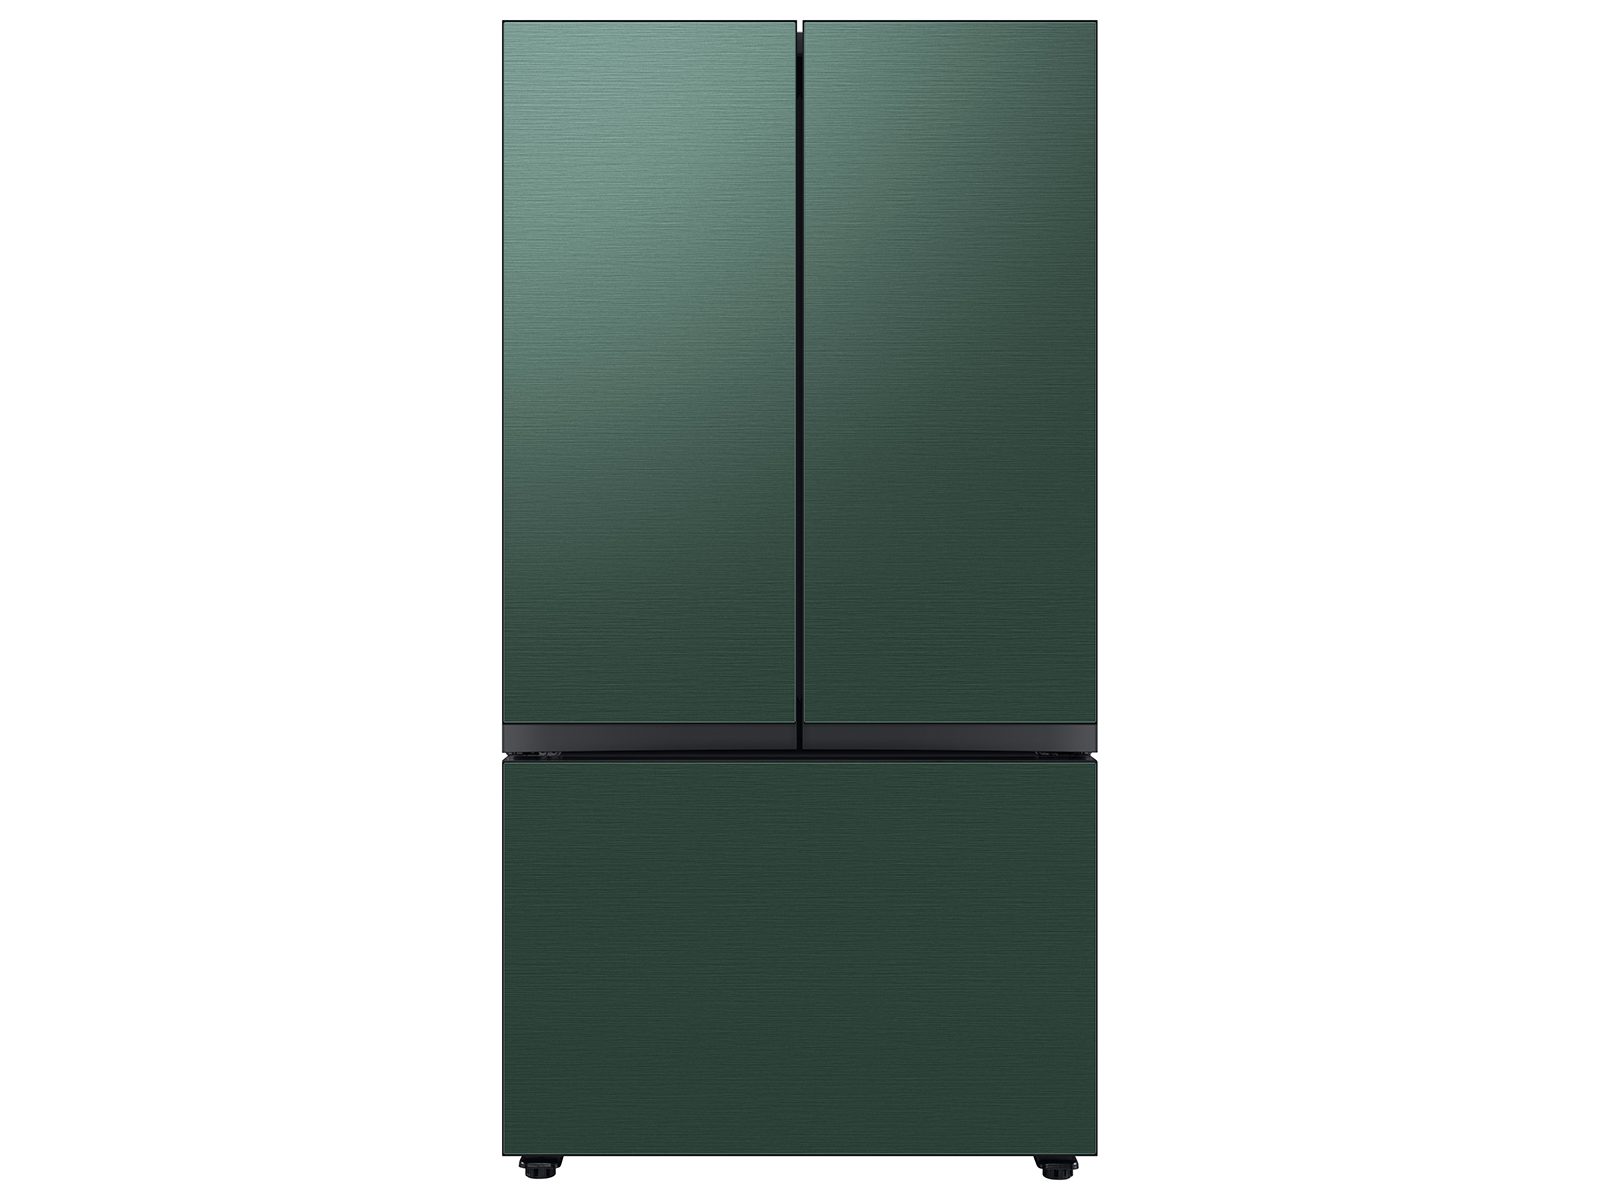 Samsung Bespoke 3-Door French Door Refrigerator (24 cu. ft.) with Beverage Center™ in Emerald in Green Steel(BNDL-1650311698378)